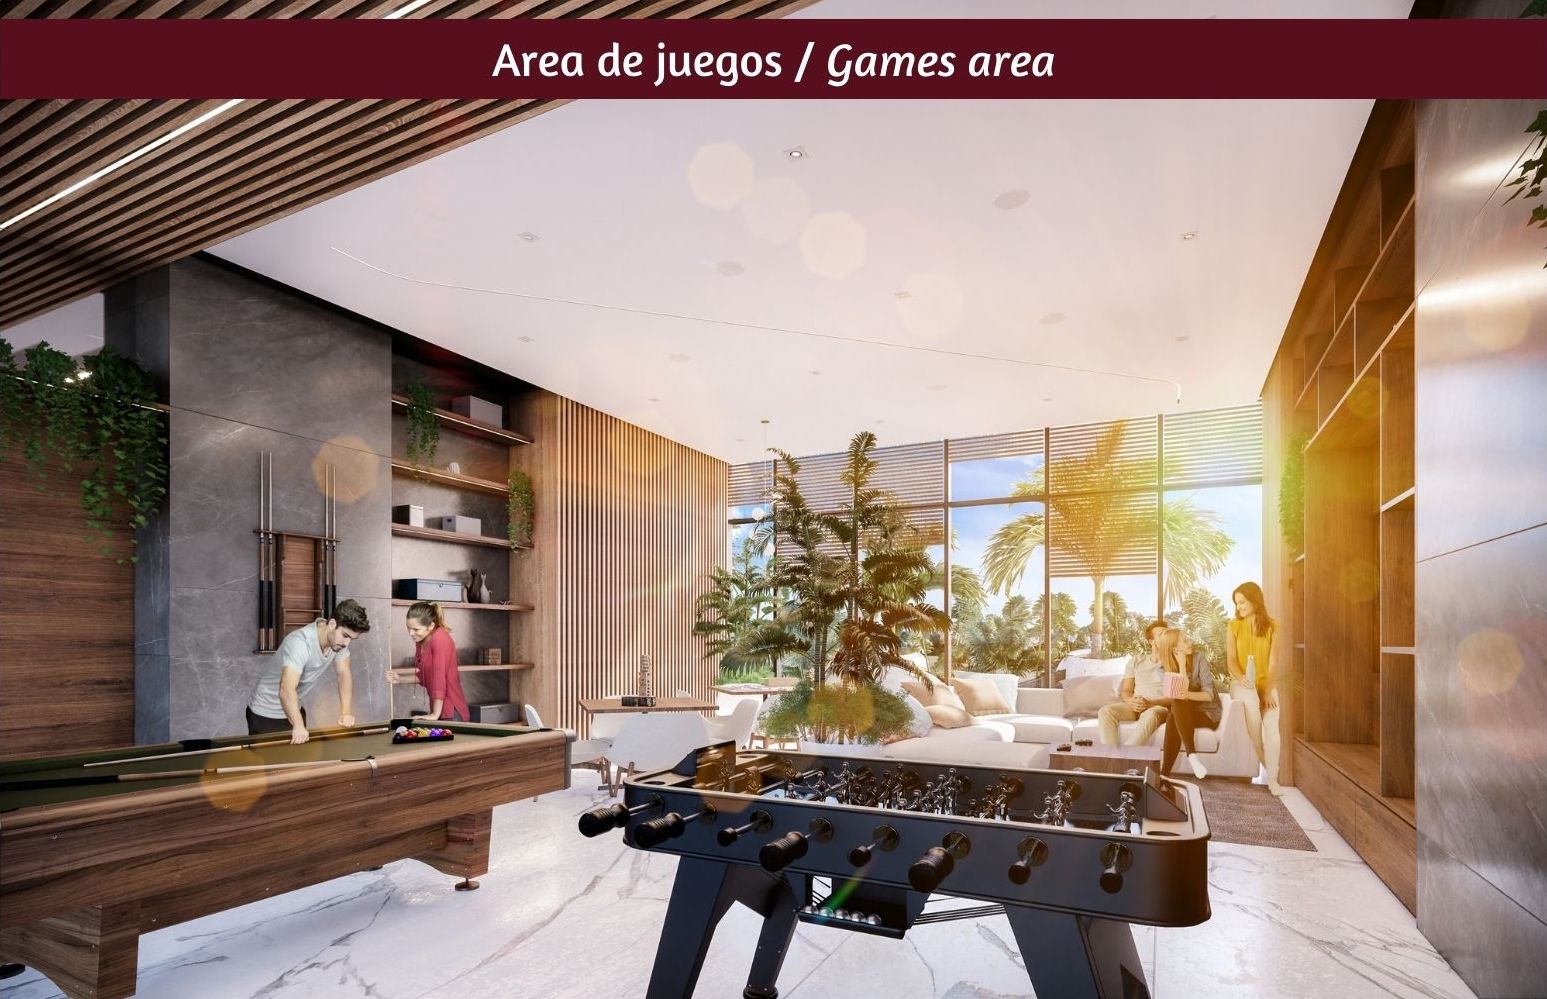 Departamento con vista panorámica, alberca infinity, jacuzzi, snack bar,  cuarto de servicio, pre-construccion, Puerto Cancun.